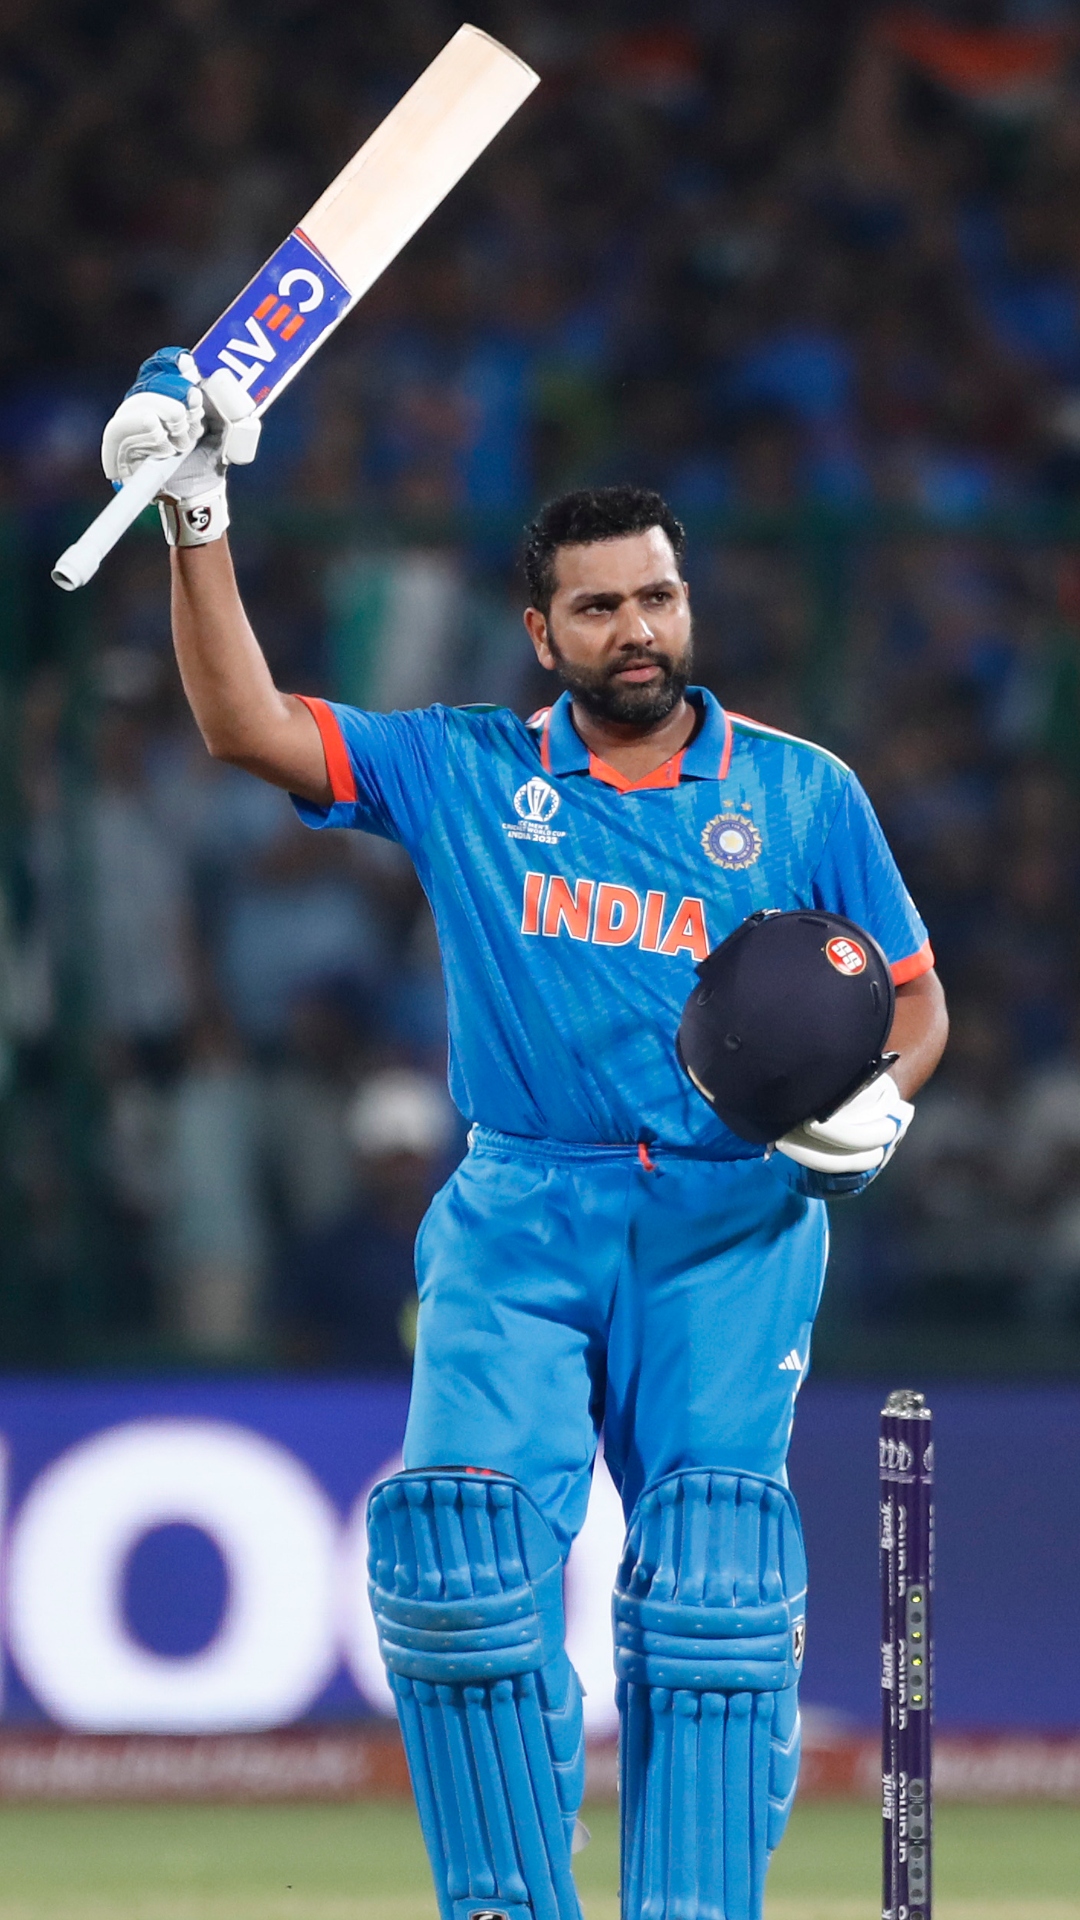 भारत के लिए वनडे वर्ल्ड कप में सबसे तेज शतक जड़ने वाले बल्लेबाजों की लिस्ट